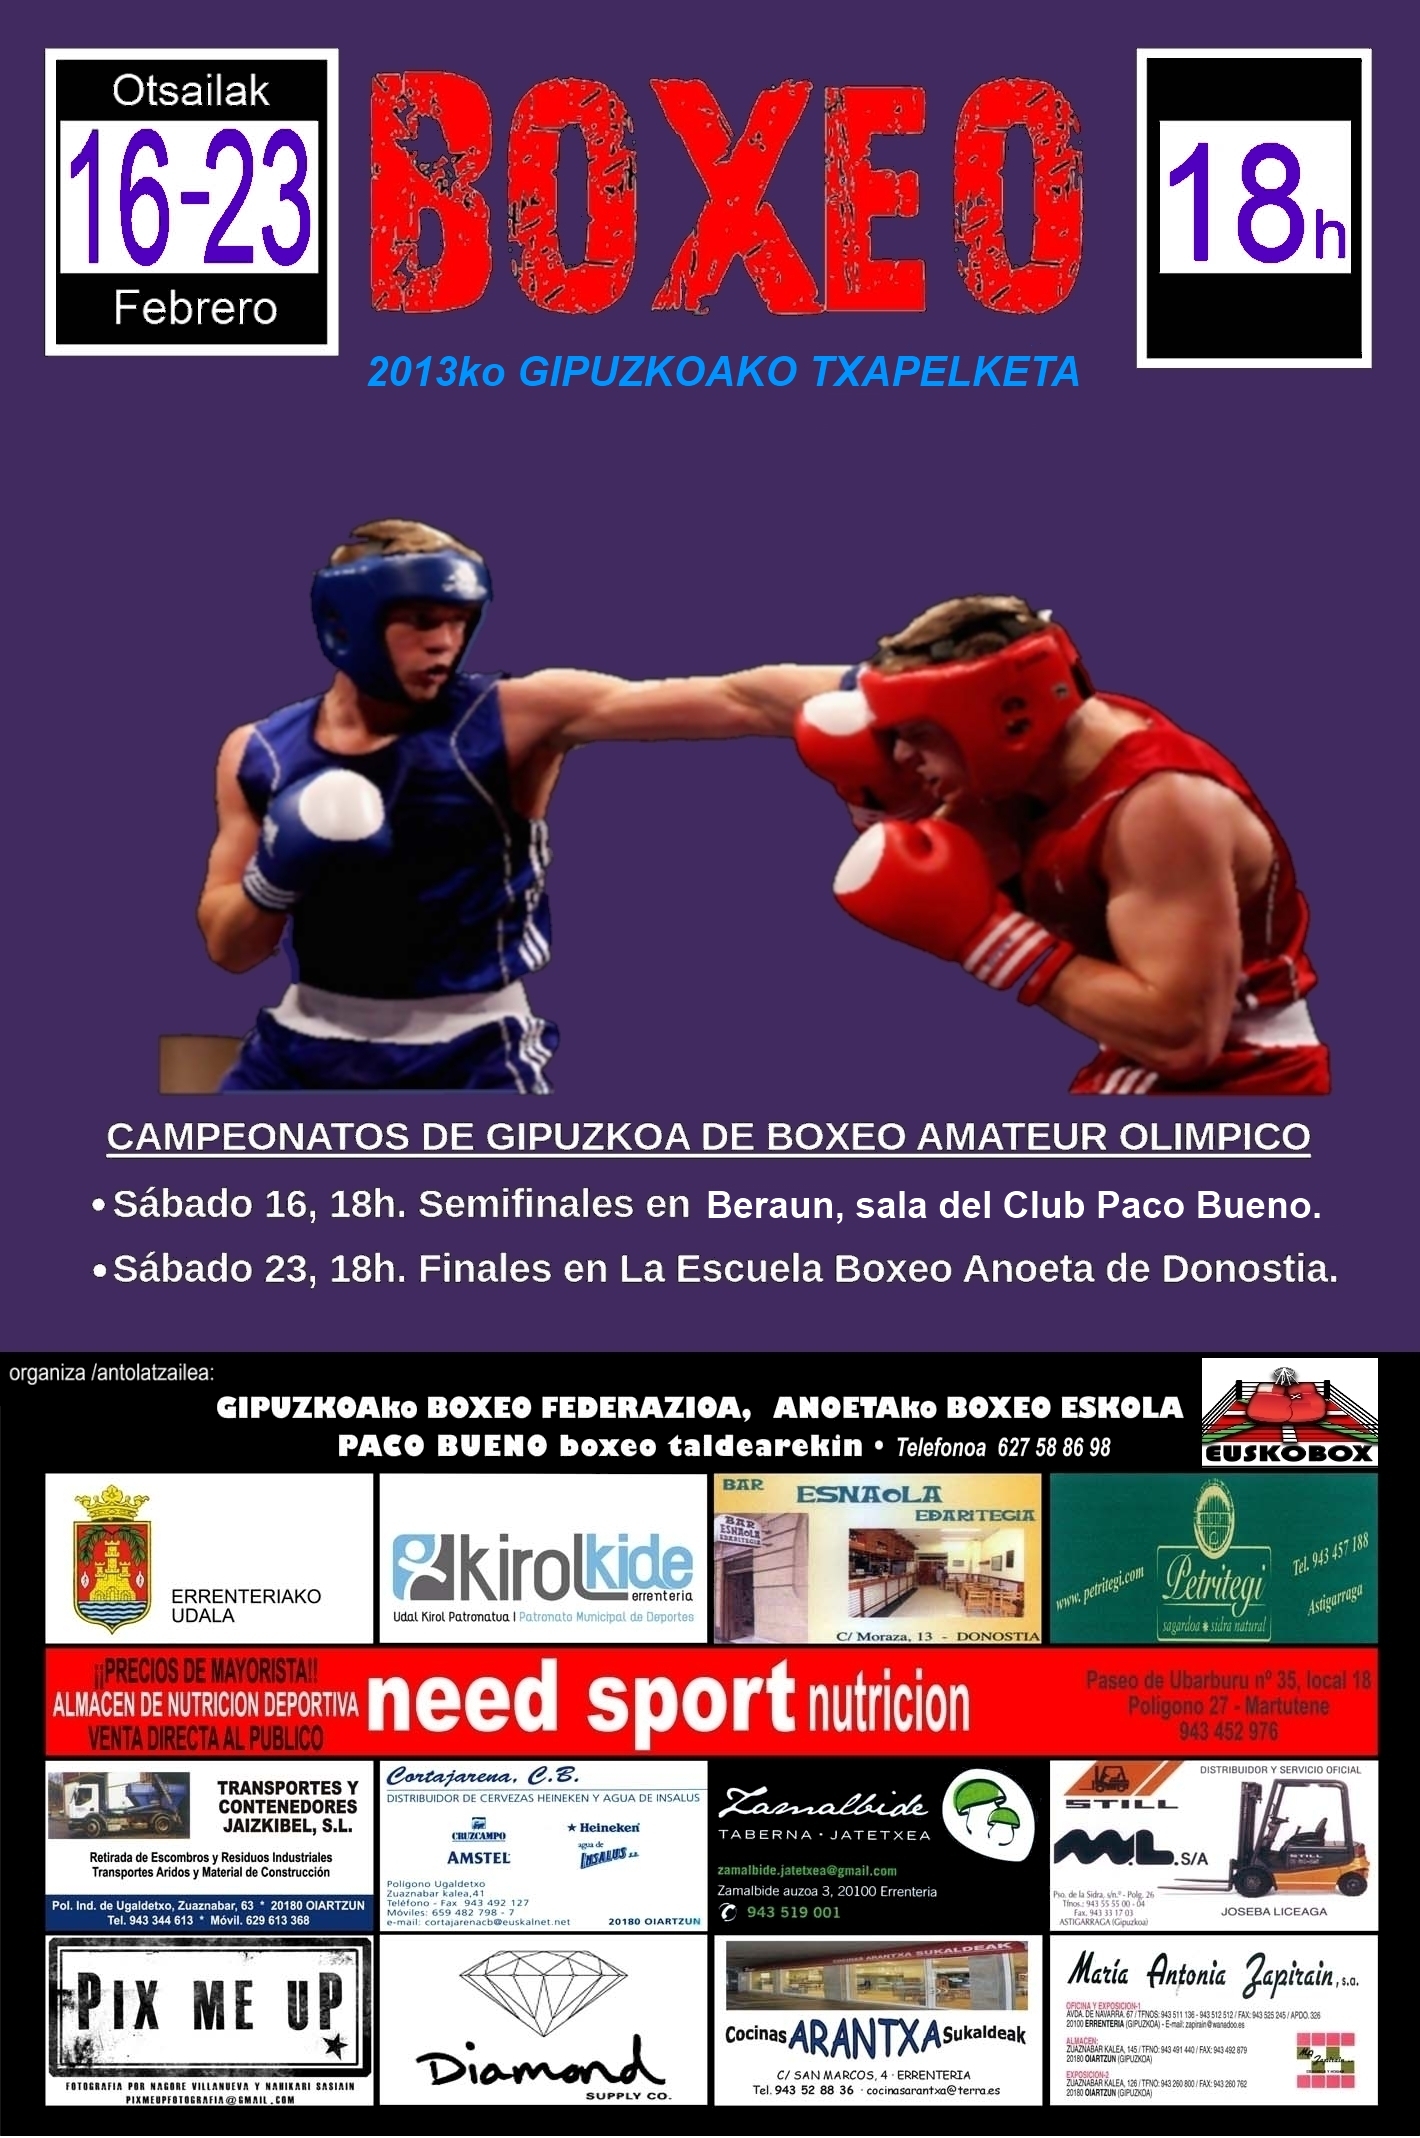 Cartel para campeonatos de boxeo de Gipuzkoa